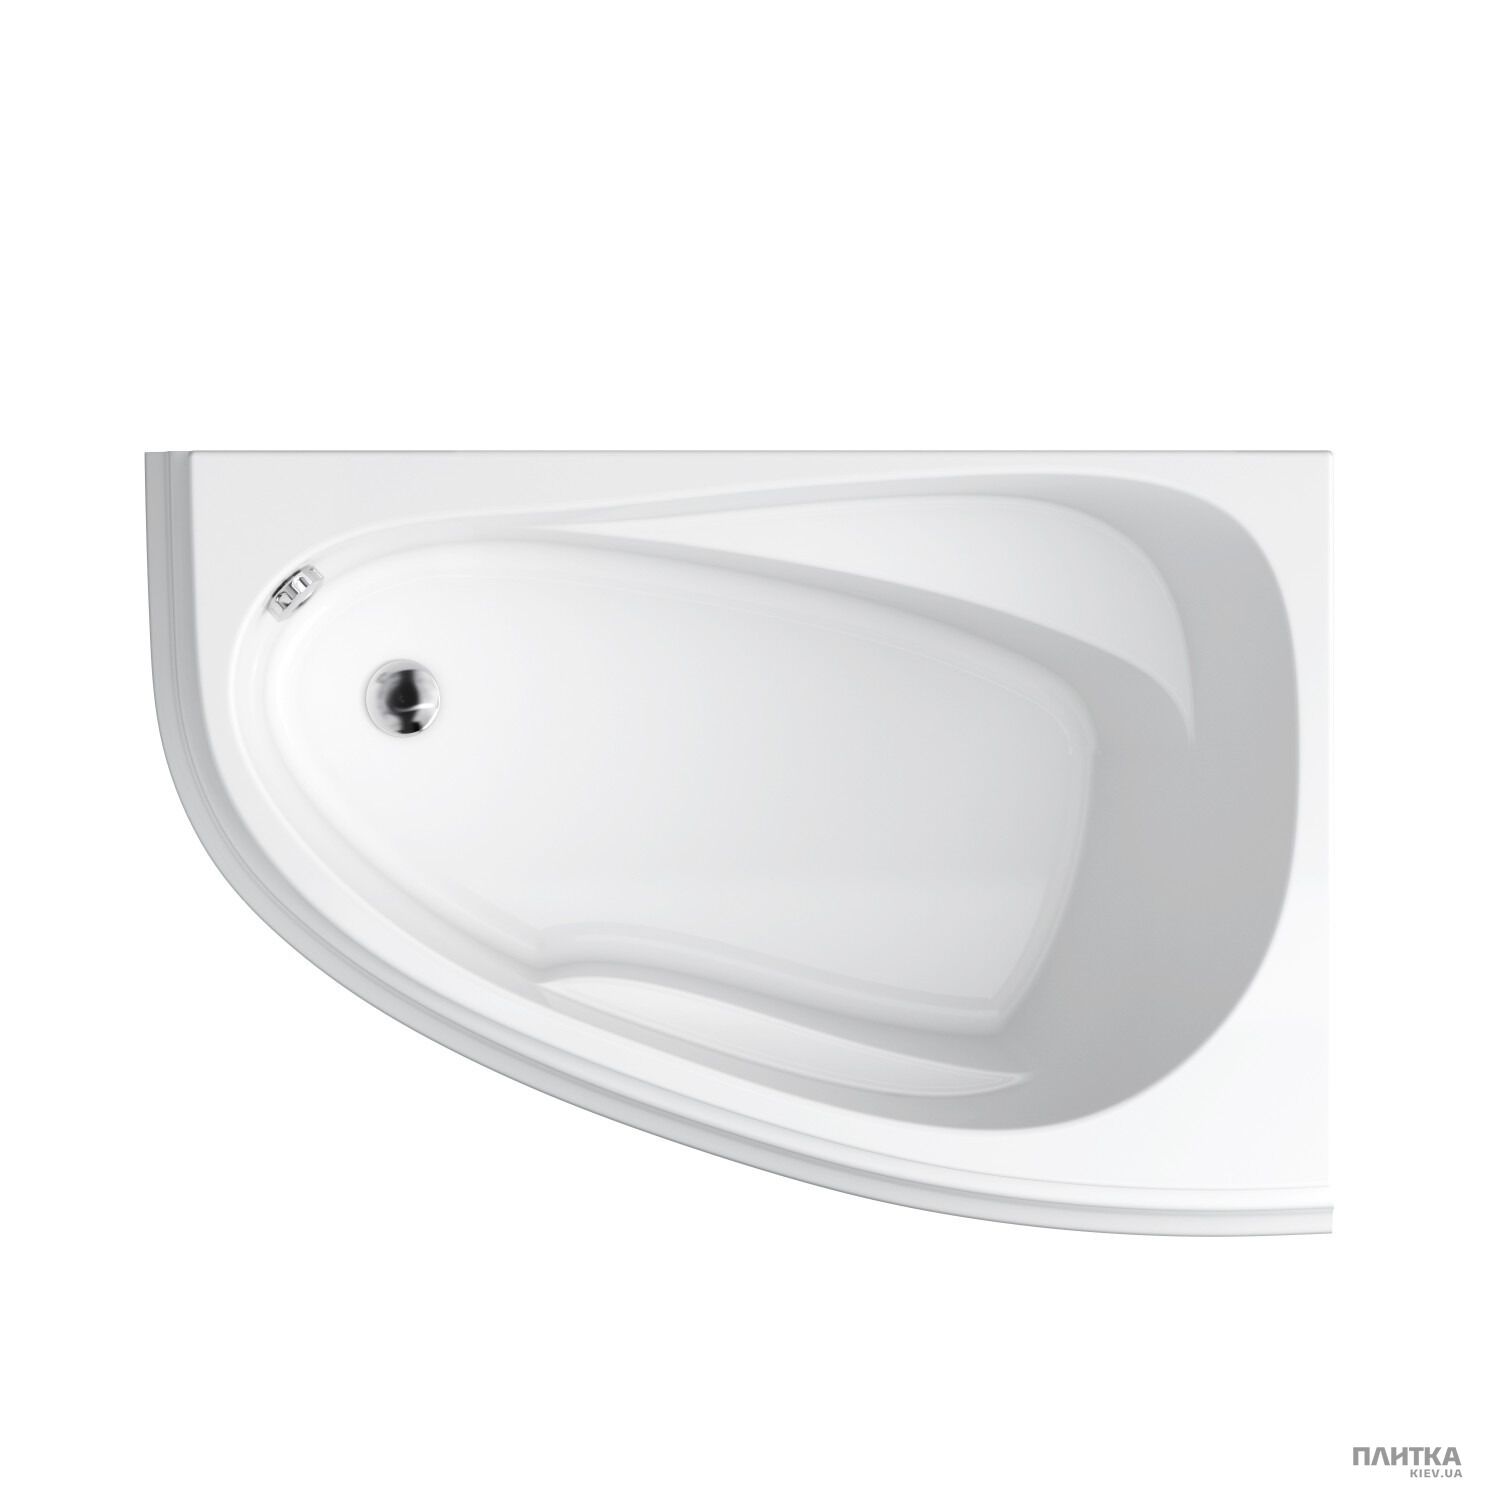 Акриловая ванна Cersanit Joanna New 150x95 см правая, асимметричная белый